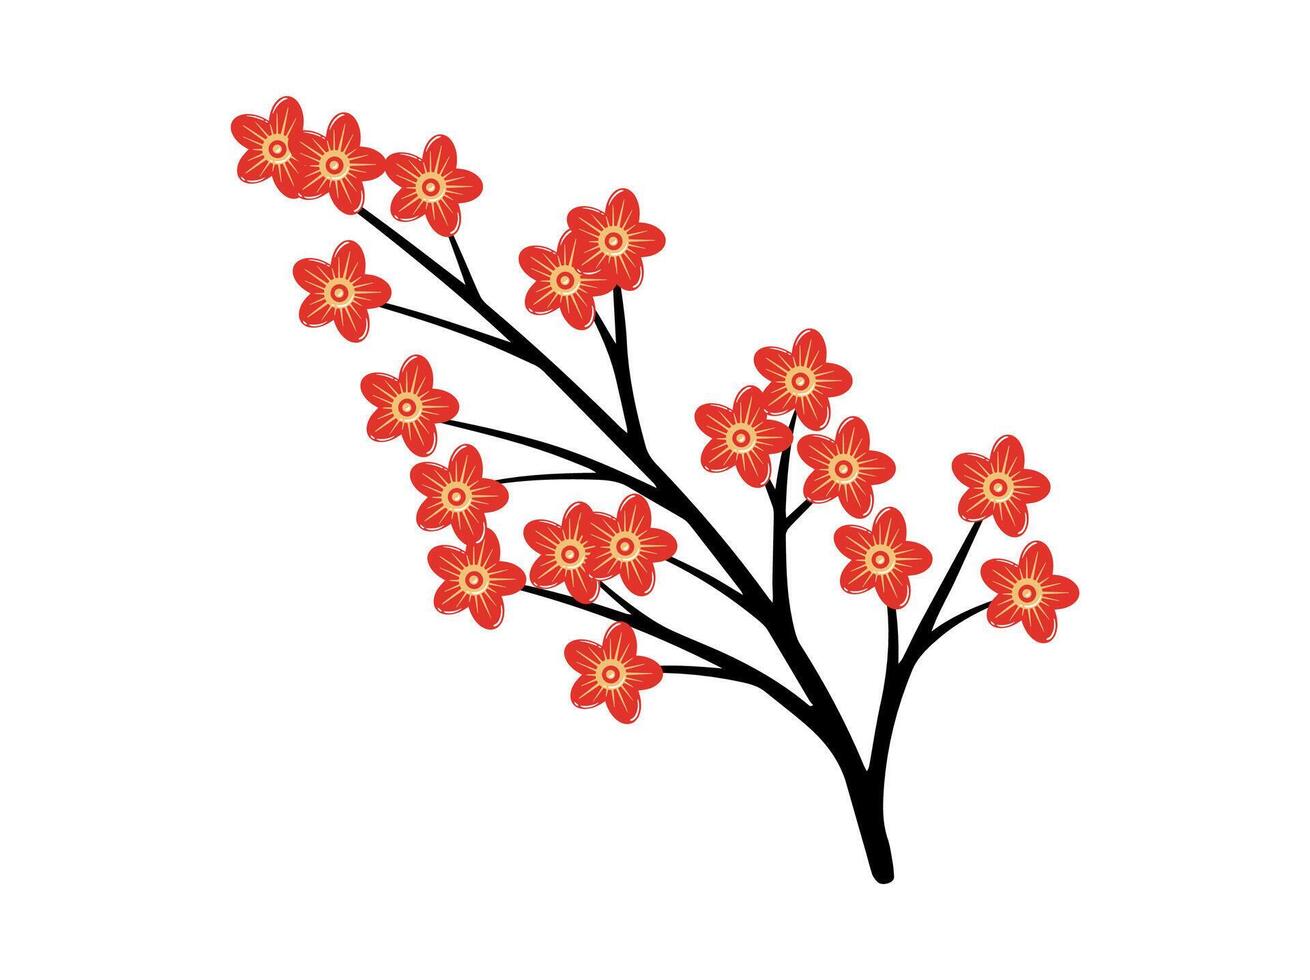 Chinesisch Neu Jahr Blume Illustration vektor